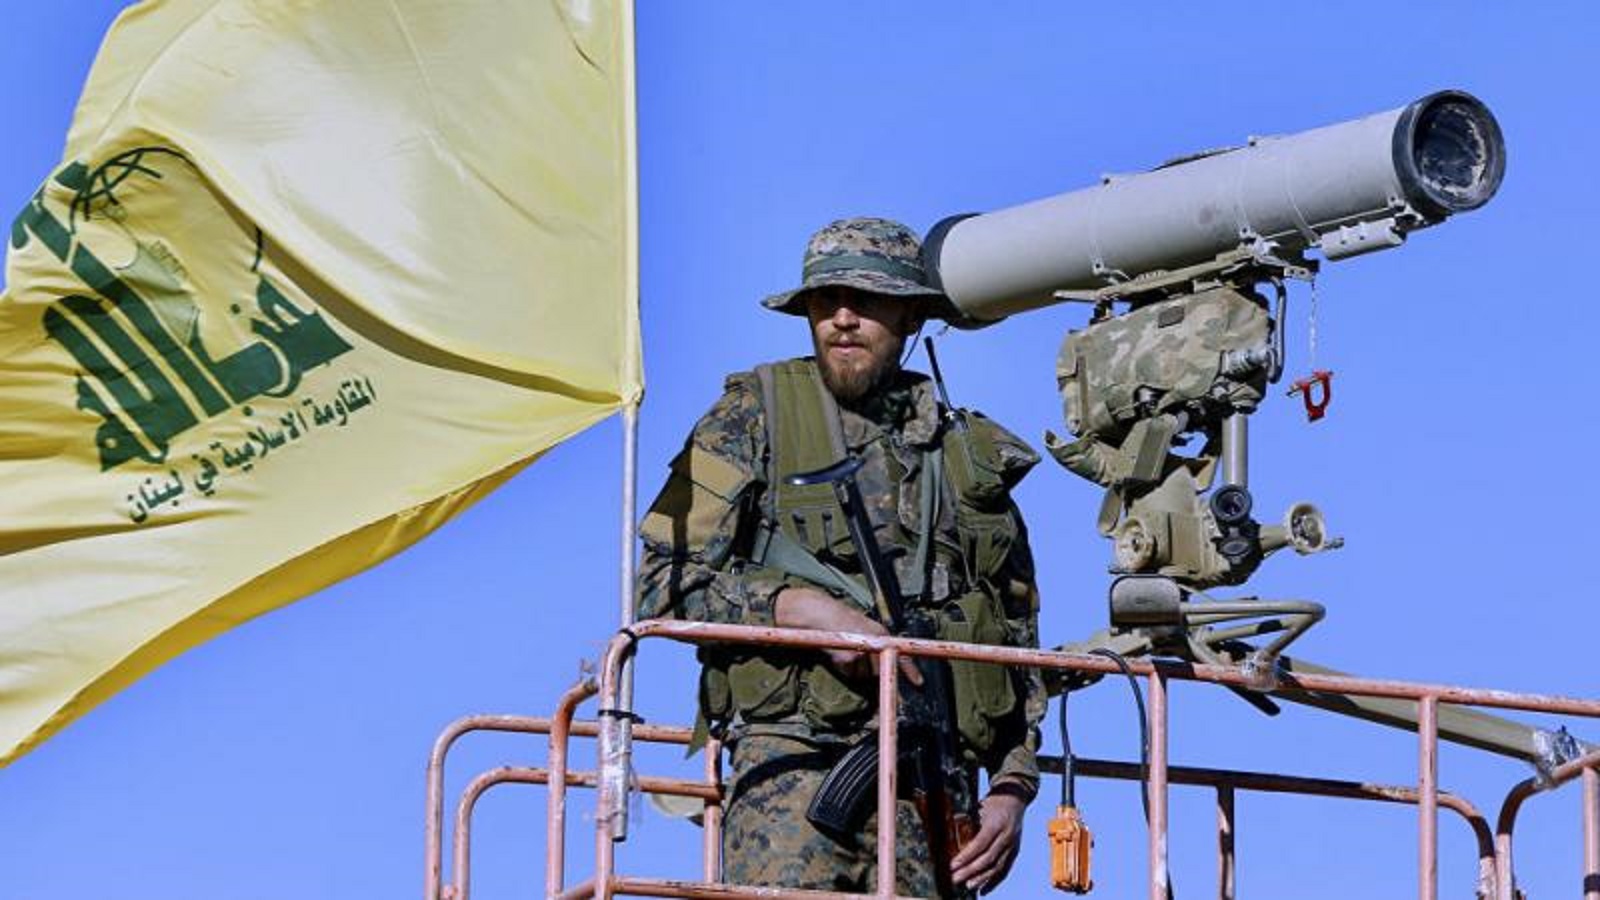 كشف إسرائيلي يُبعد شبح الحرب عن "حزب الله"